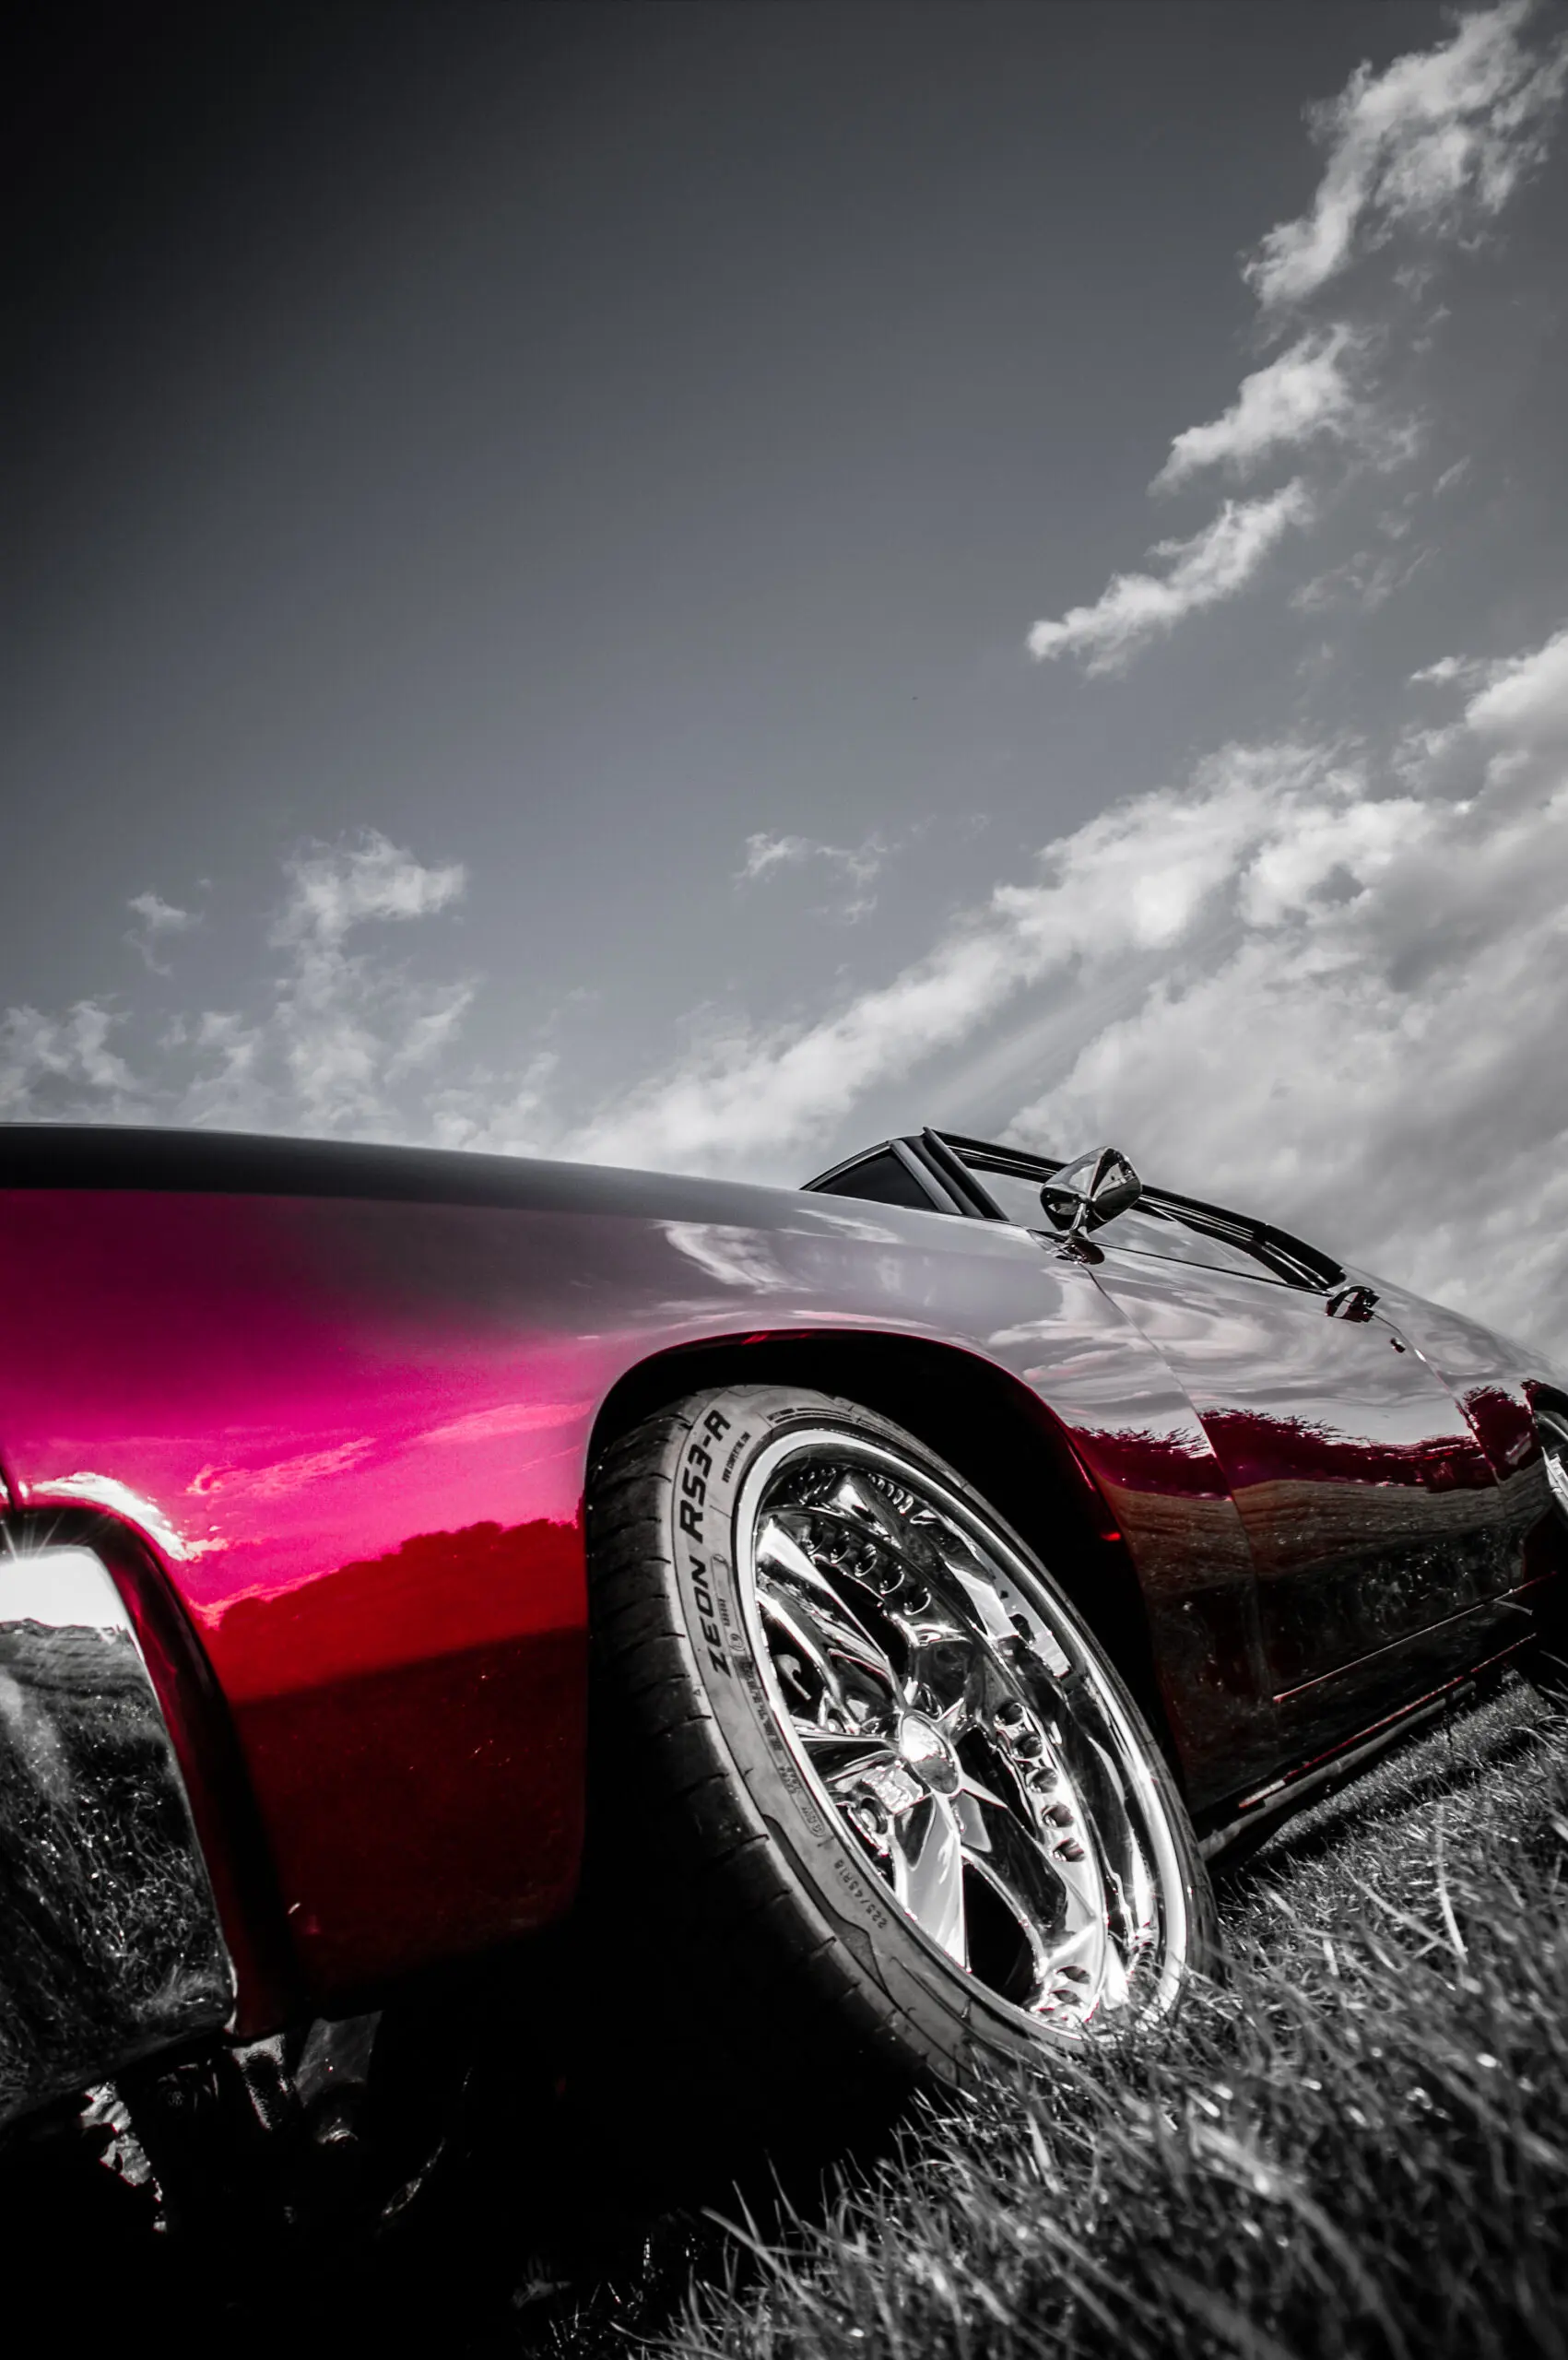 Wandbild (3712) Chevelle präsentiert: Technik,Auto,Detailaufnahmen